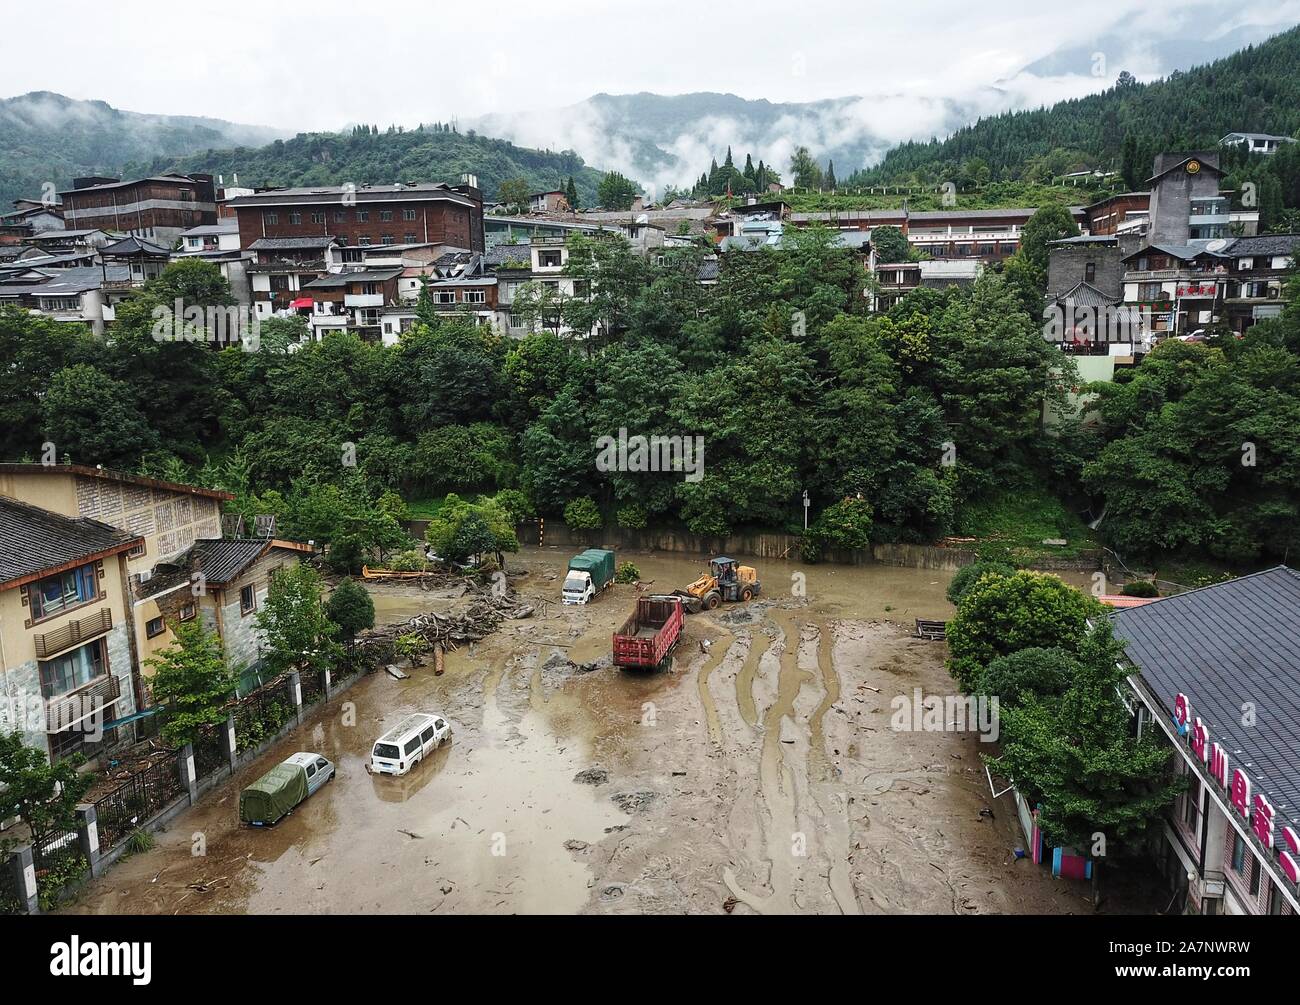 Straßen, Felder und Wohngebäuden mit Schlamm bedeckt und von einem Hochwasser überschwemmt, nachdem mehrere Erdrutsche ausgelöst durch starke Niederschläge im Shuim Stockfoto